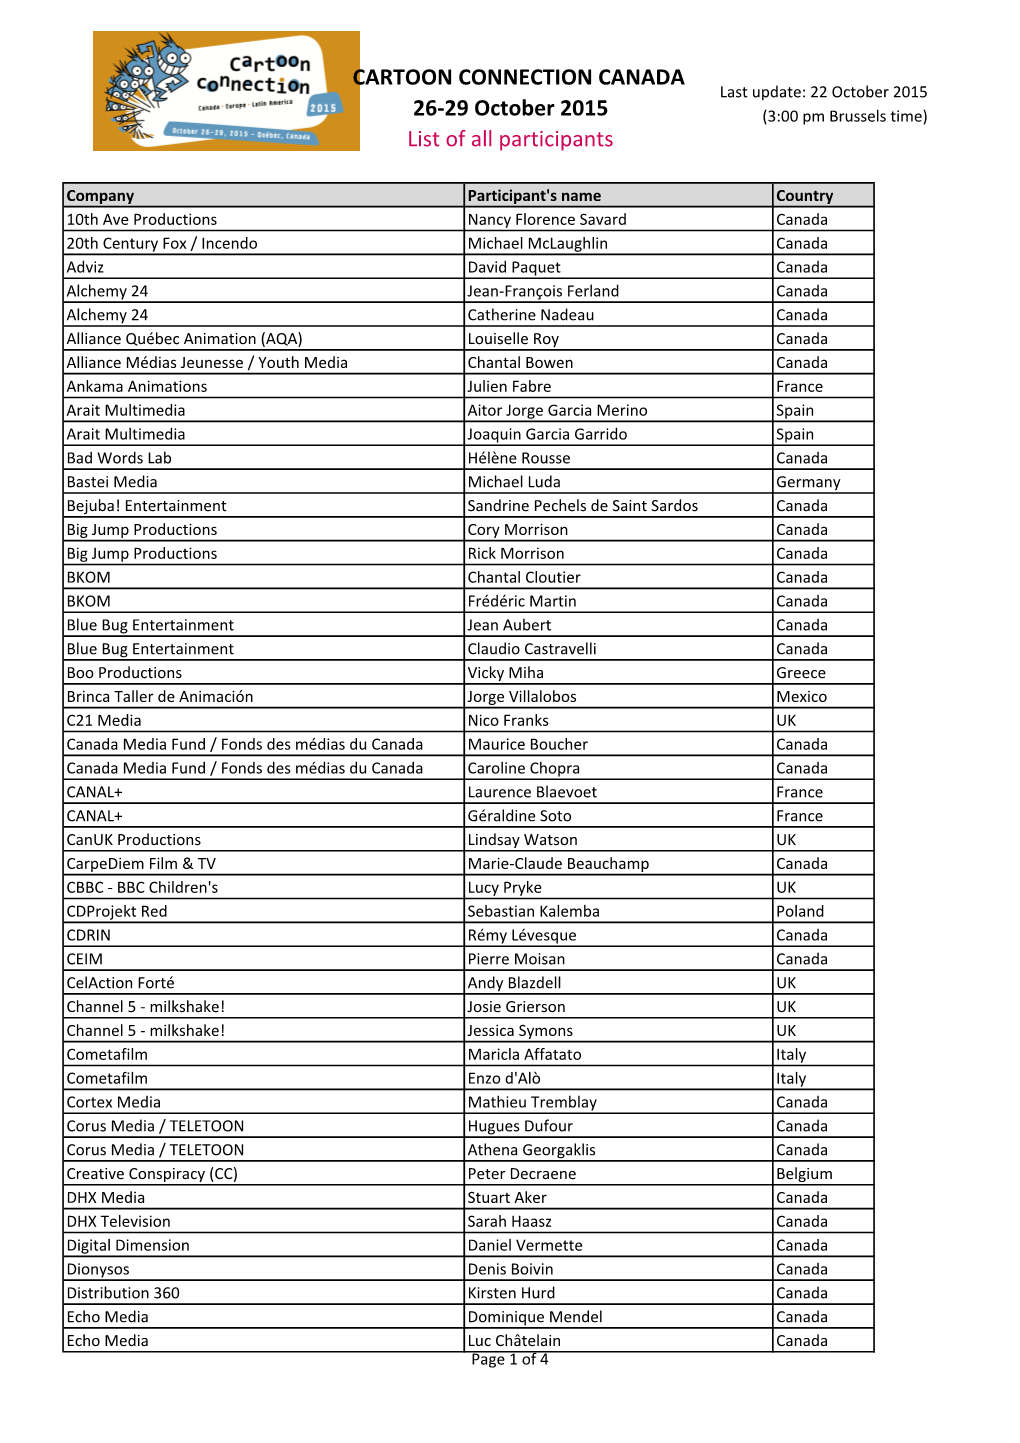 2015-List of Participants CONNECTIONCANADA.Xlsx